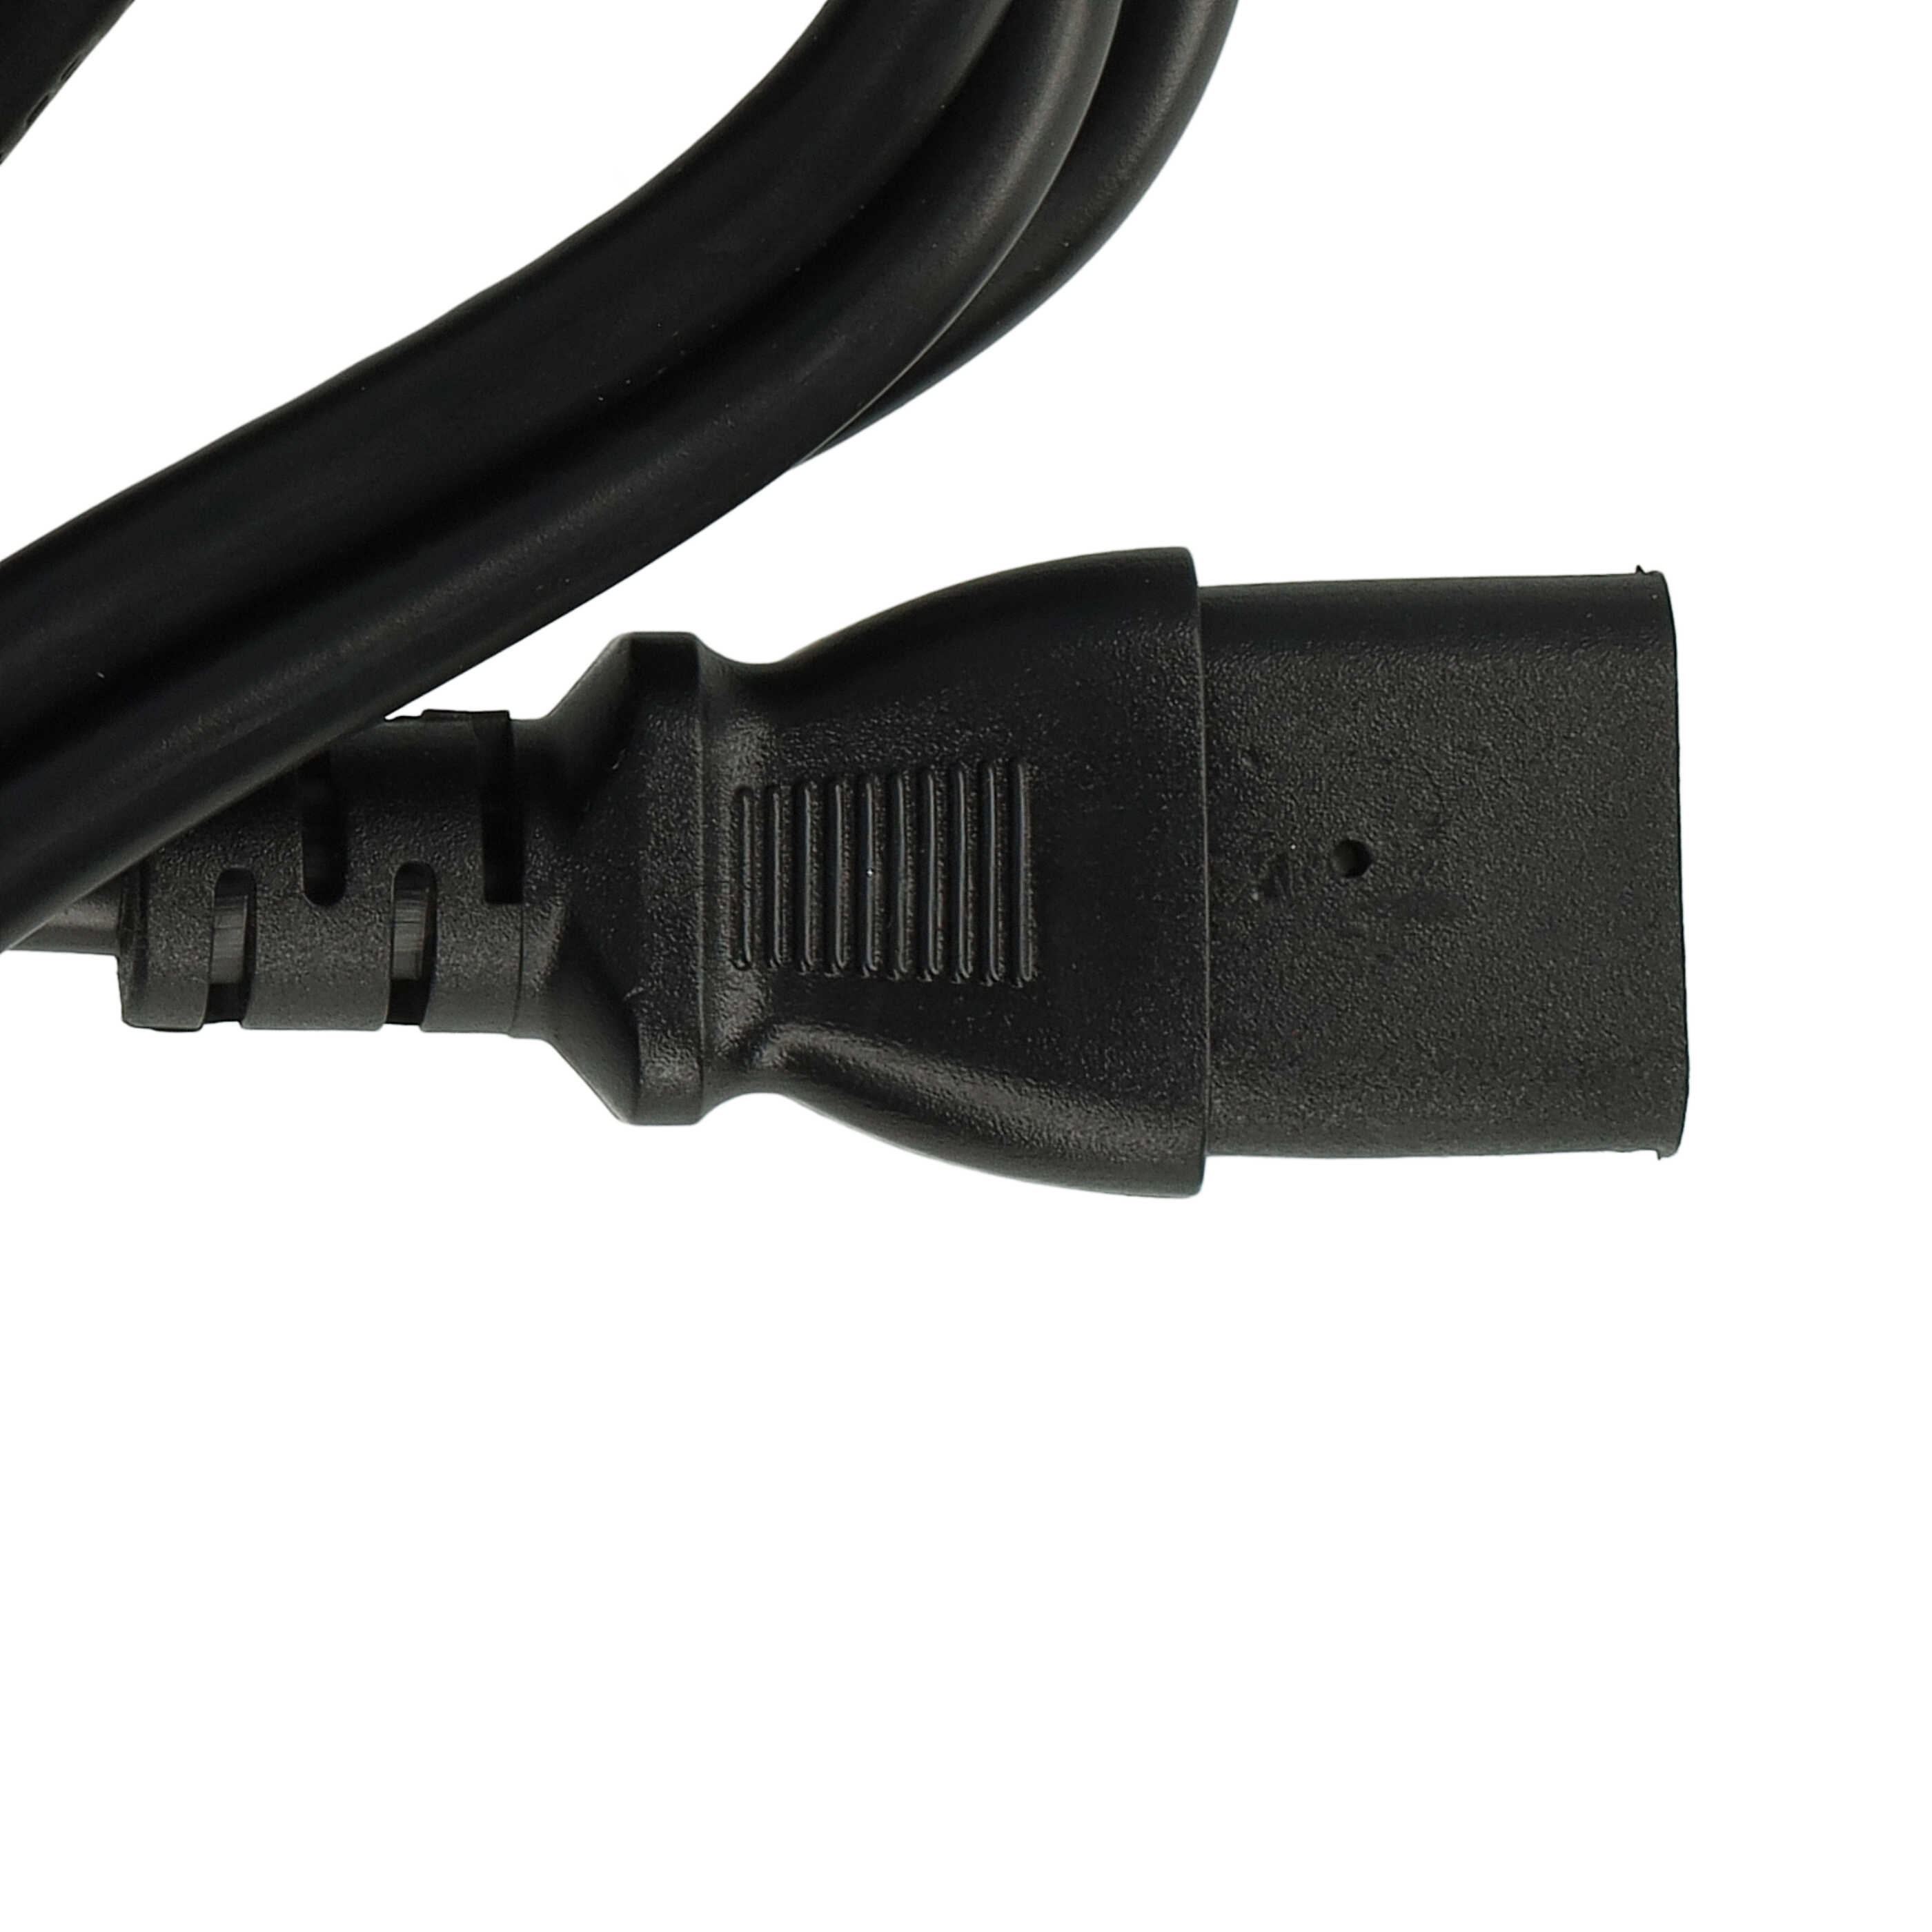 C13 Netzkabel Euro Plug passend für Kaltgeräte z.B. PC Monitor Computer - 1,2 m